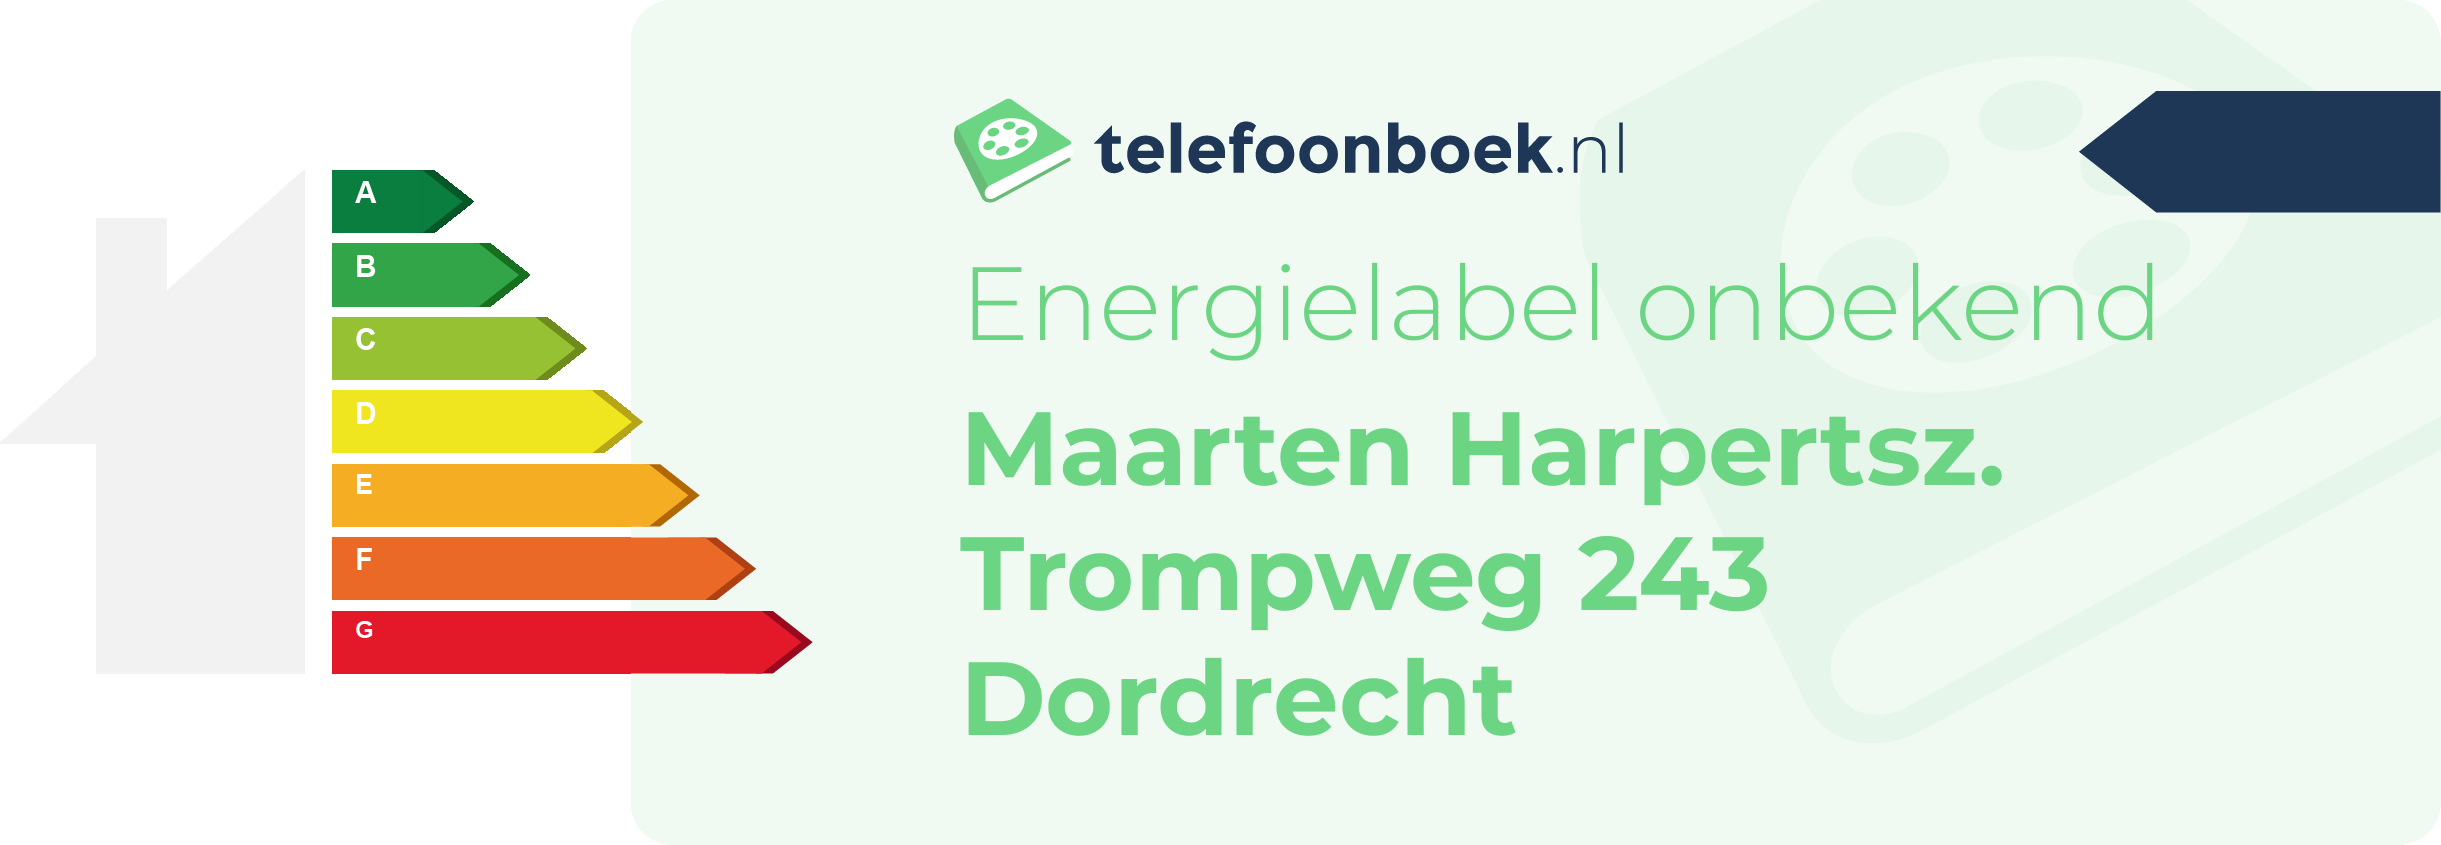 Energielabel Maarten Harpertsz. Trompweg 243 Dordrecht